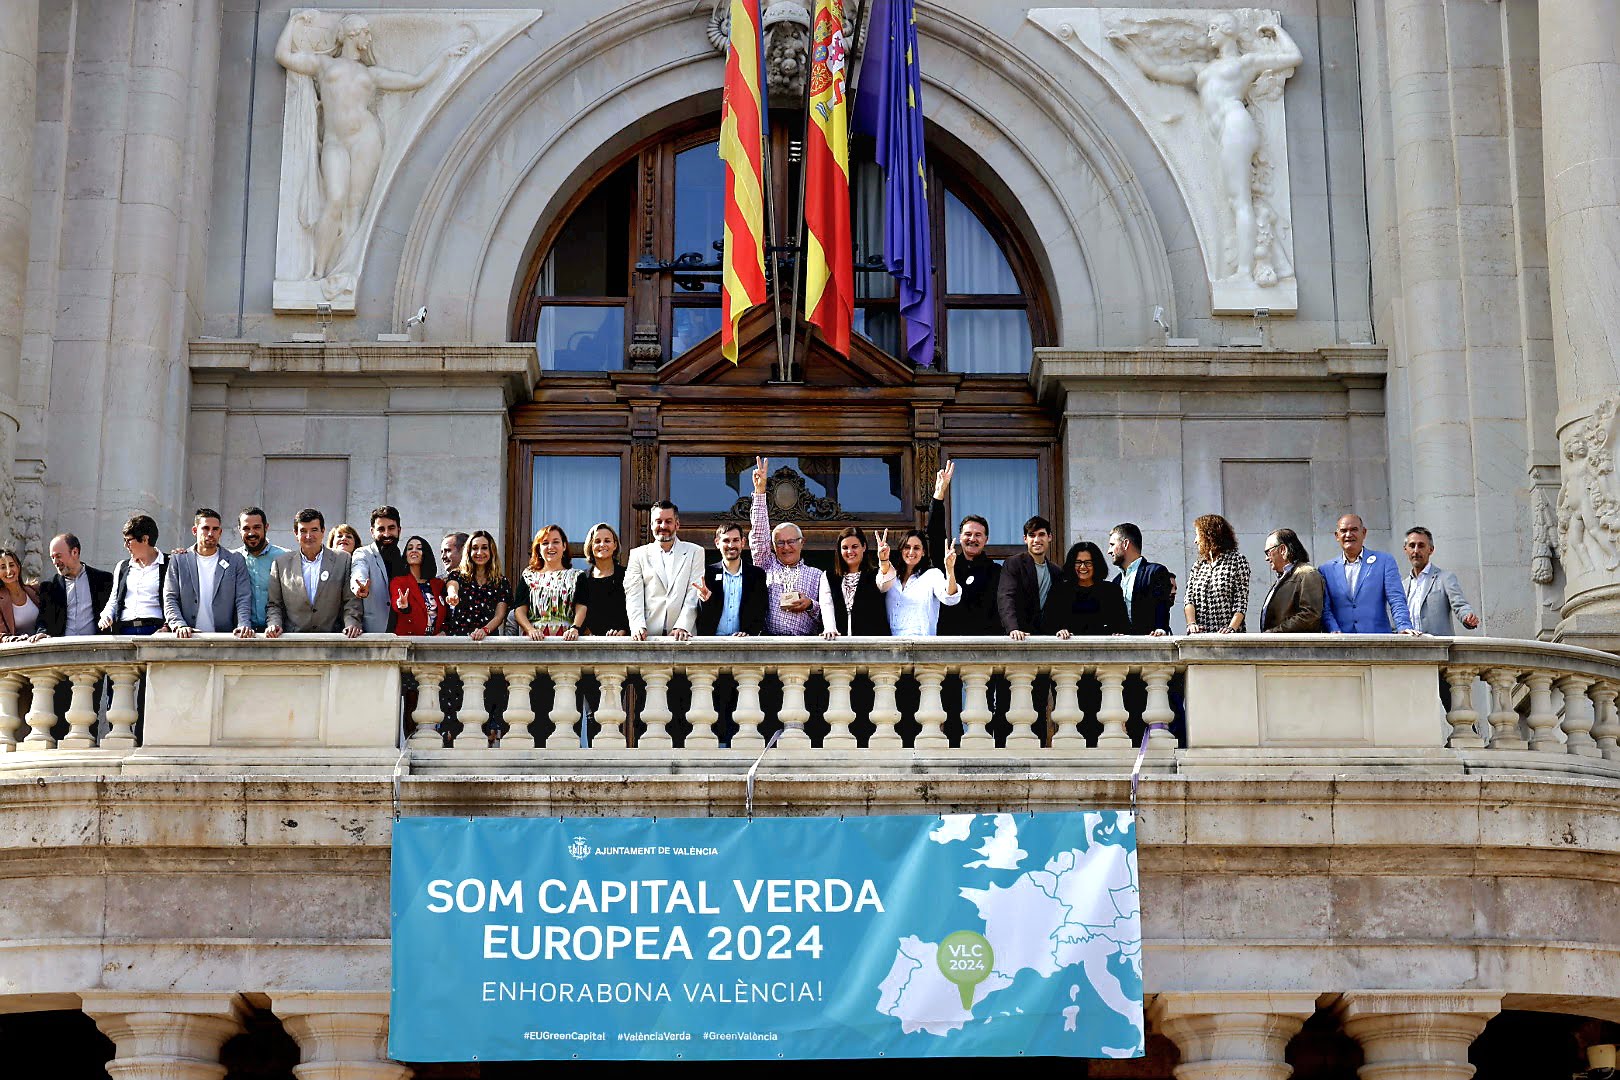 Fotografía de la celebración en el balcón del Ayuntamiento el nombramiento de València como Capital Verde Europea